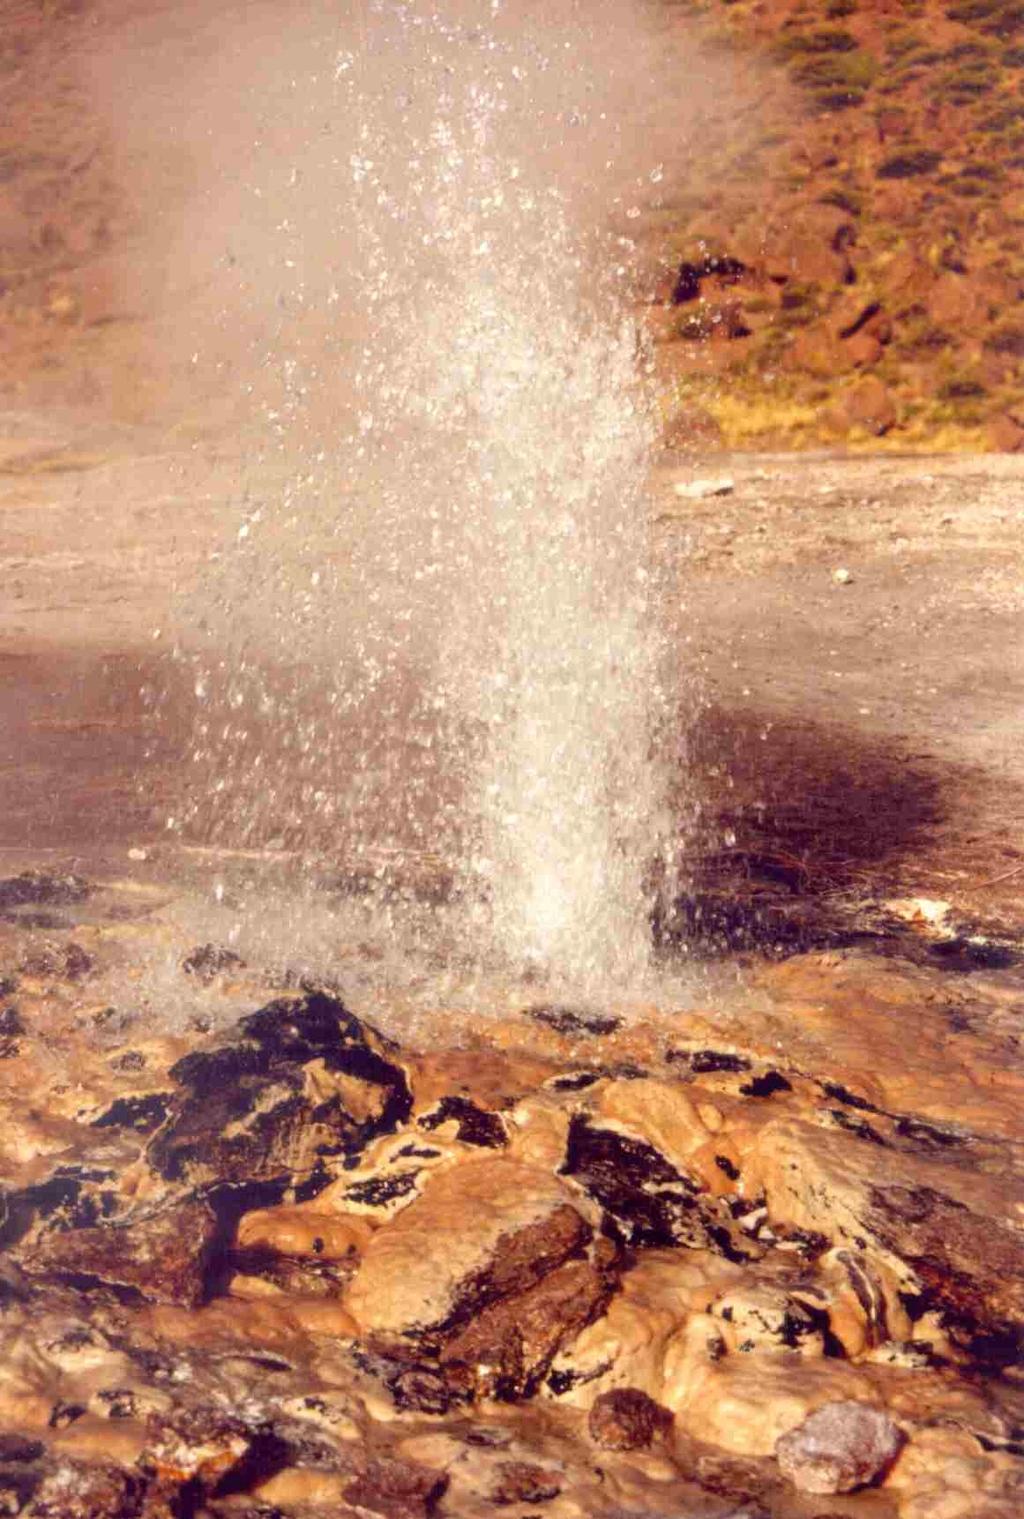 Agua-vapor o Tipo Agua-Dominante: Contienen agua presurizada a temperaturas mayores a 100ºC y pequeñas cantidades de vapor en las partes superficiales del reservorio